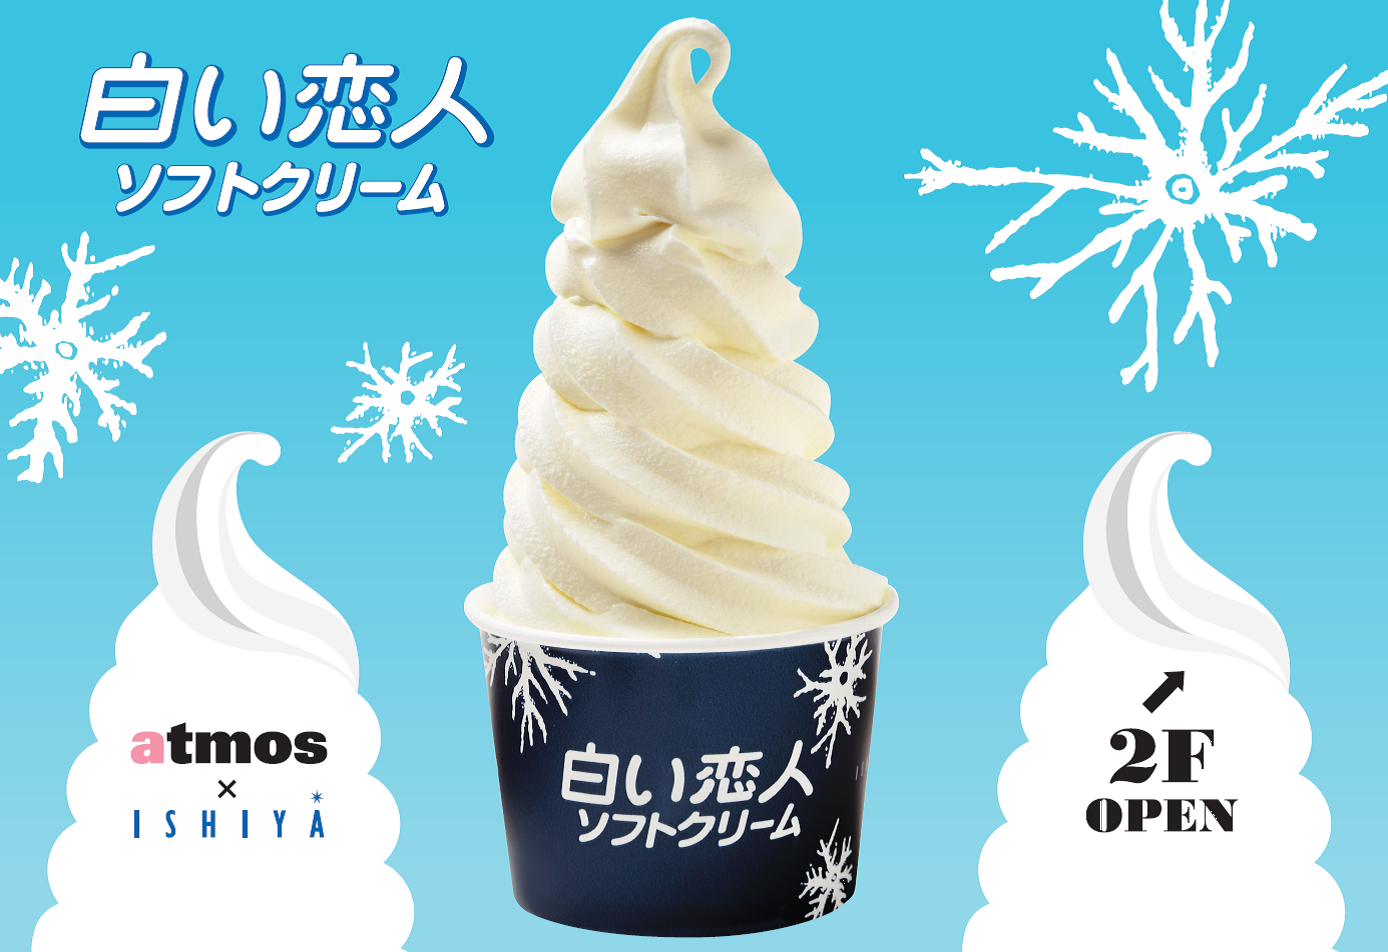 渋谷センター街に 白い恋人ソフトクリーム が道外初出店 石屋製菓株式会社のプレスリリース